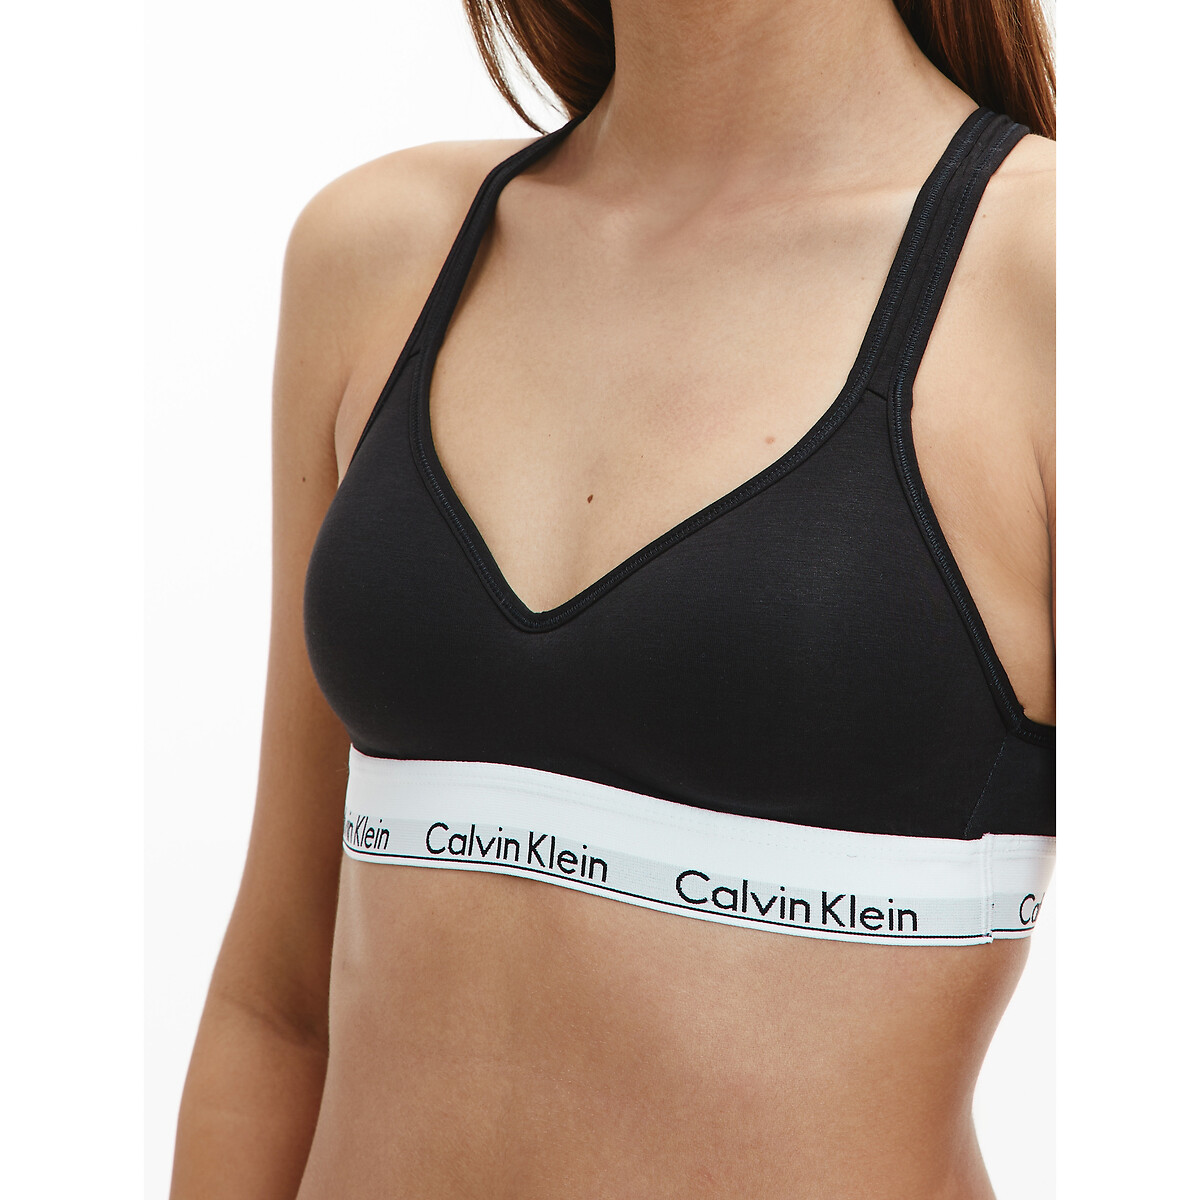 Bustier-bh mit Klein Calvin logo-schriftzug La Underwear | Redoute